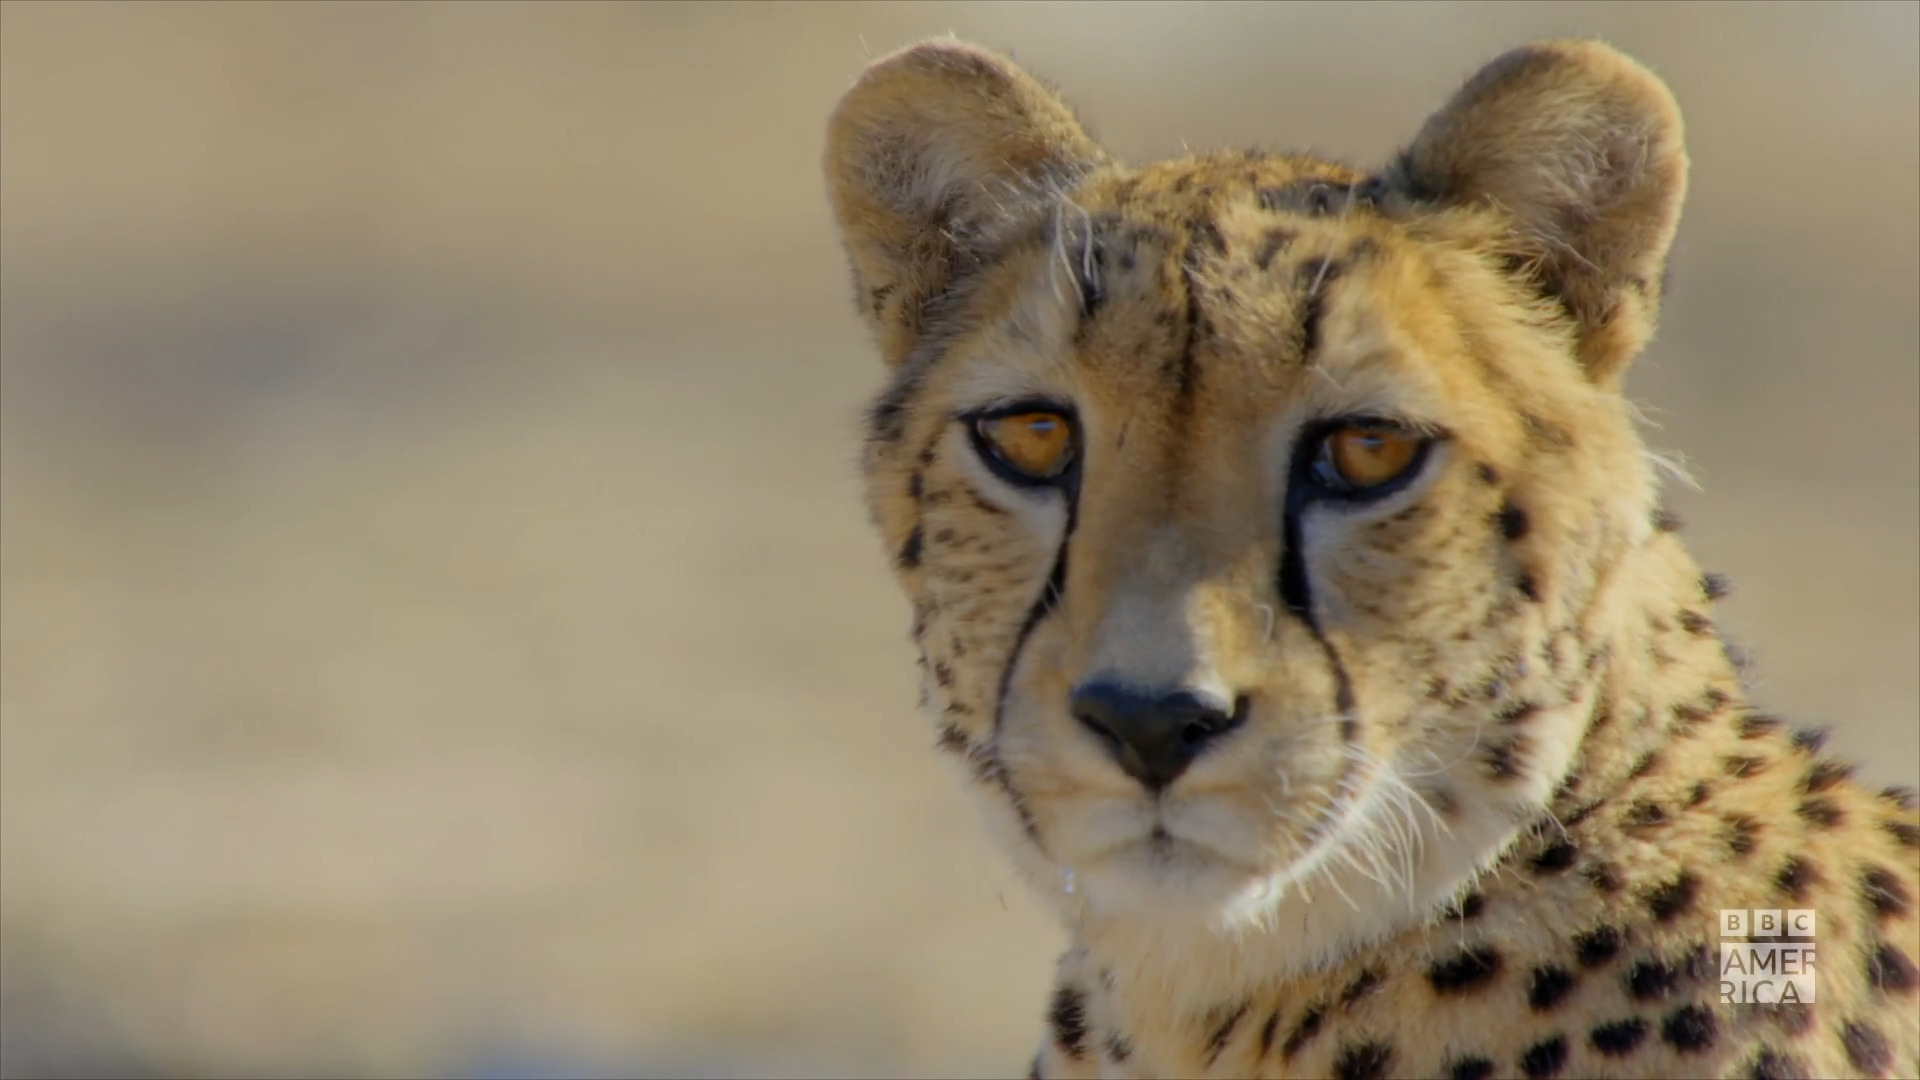 Watch Africa's Wild Year Trailer | Africa's Wild Year Video Extras